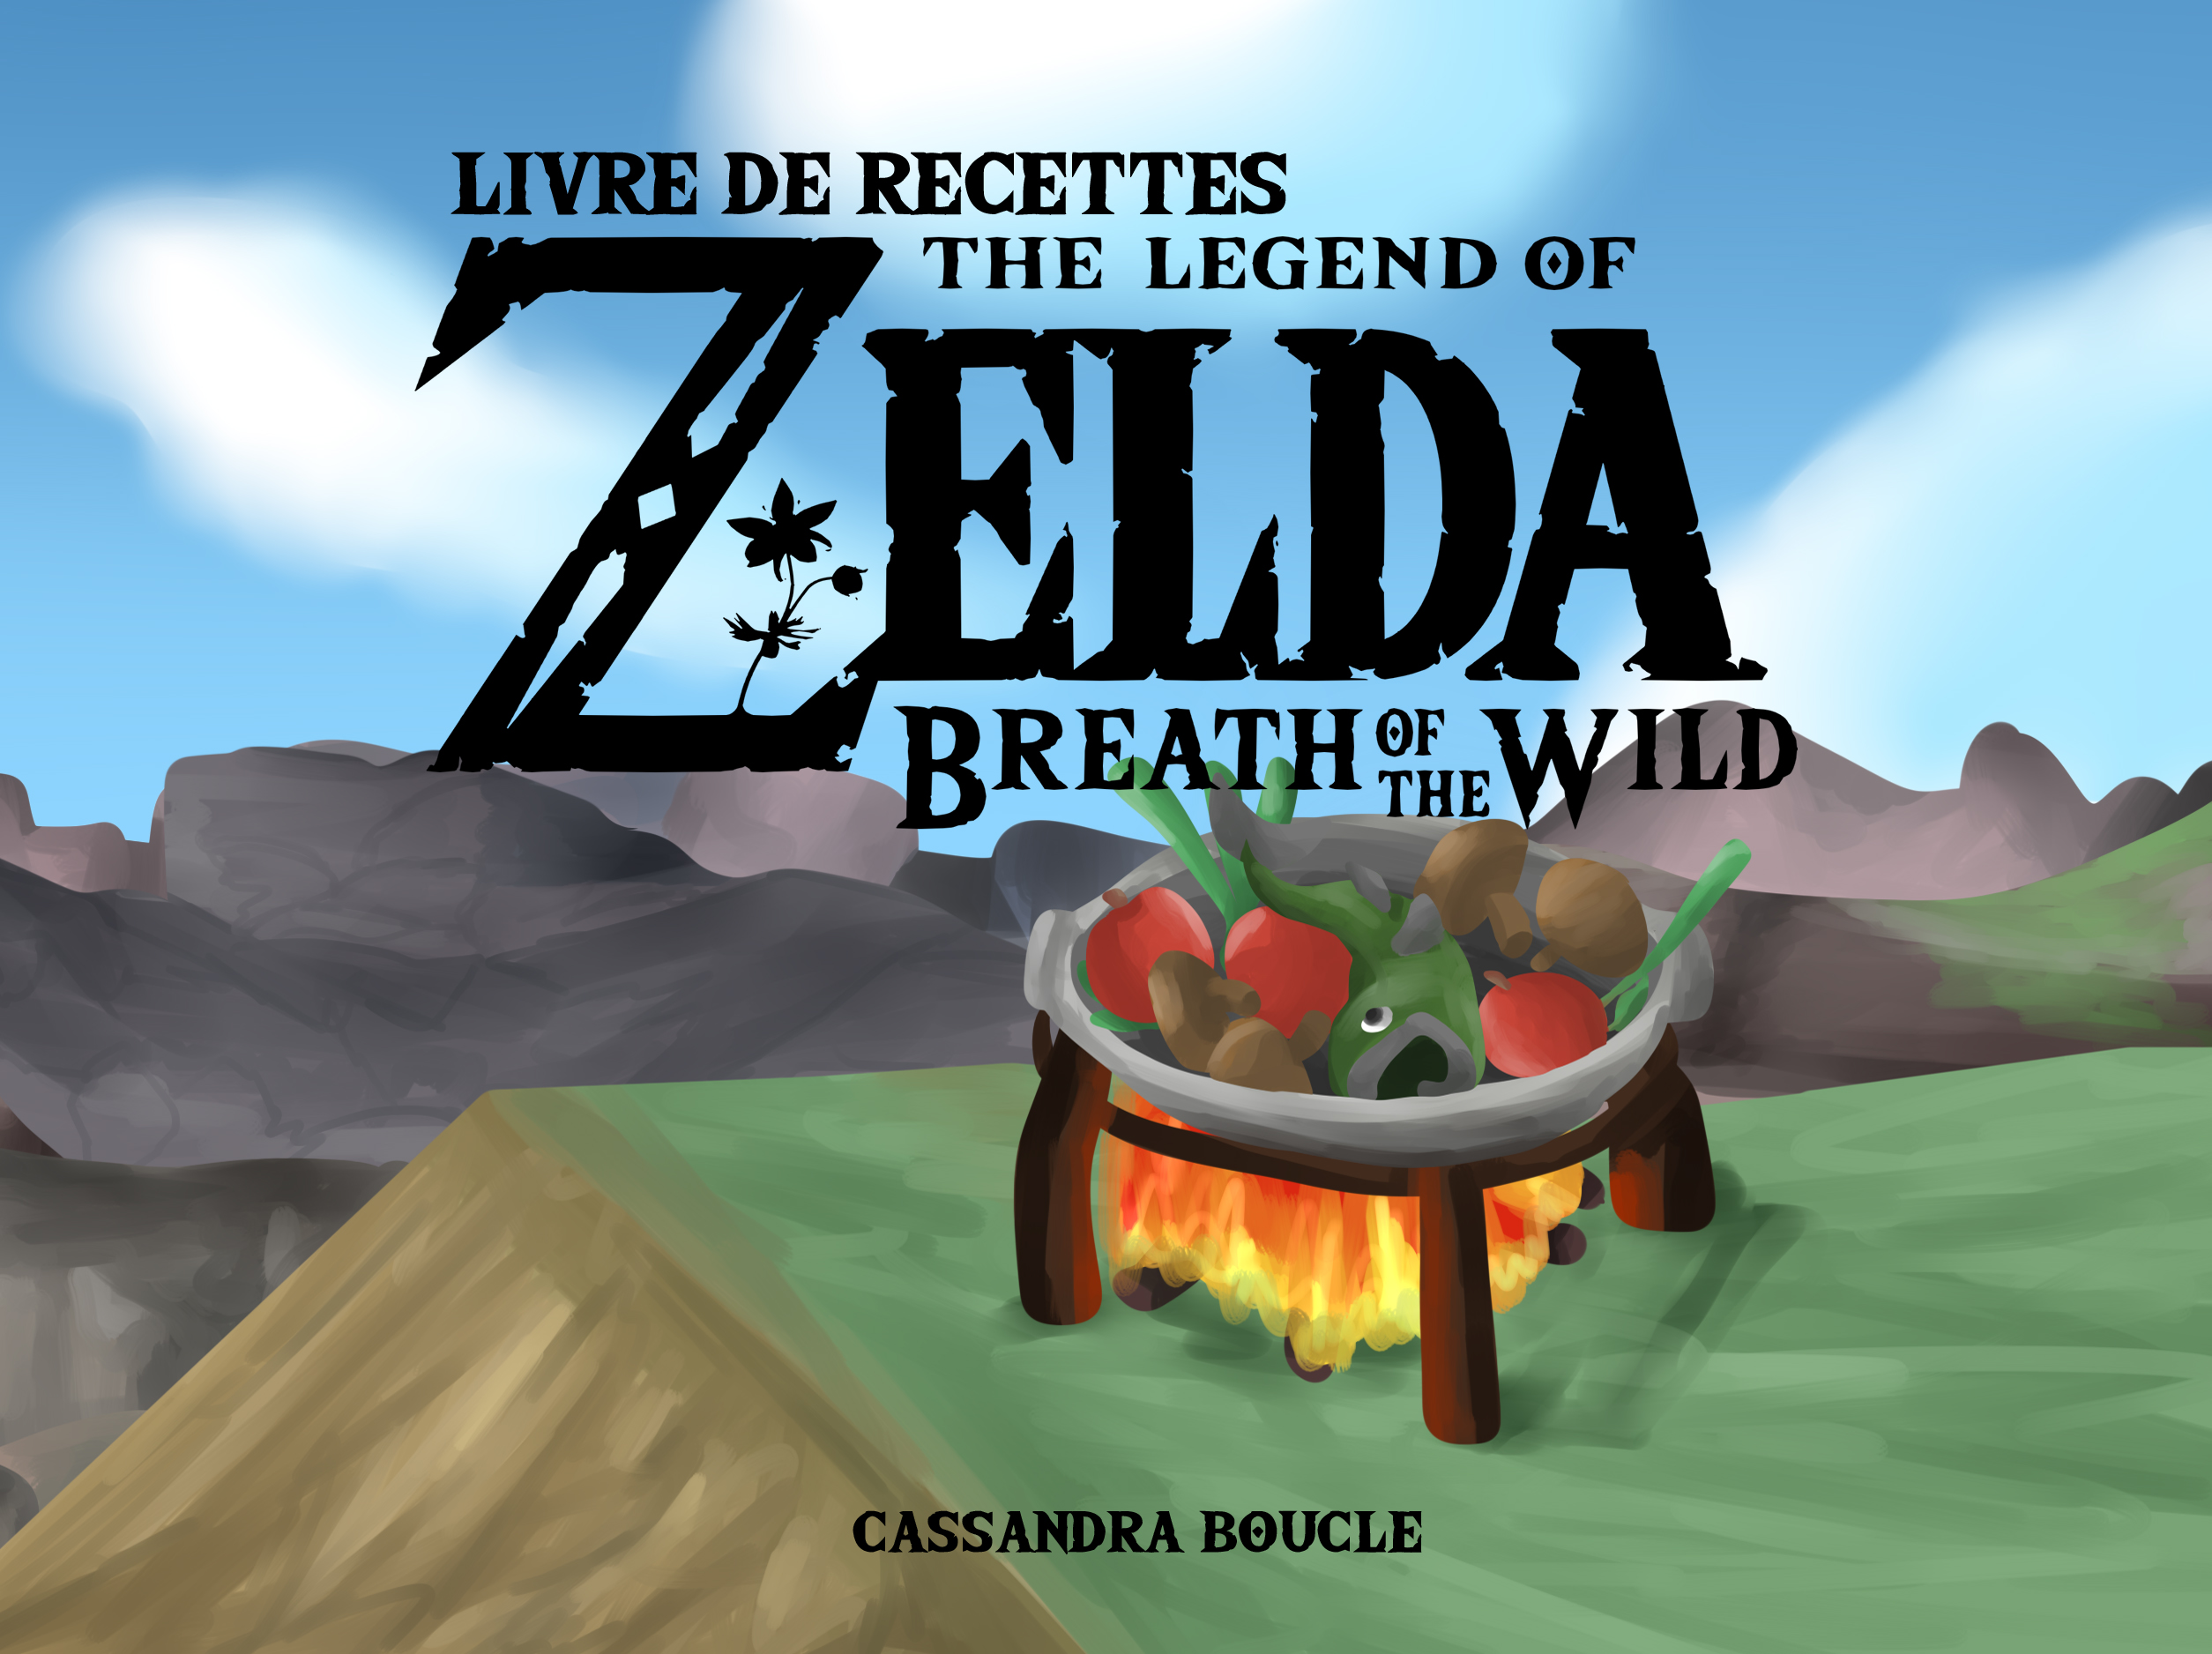 The Legend of Zelda: Breath of the Wild - Création d'un livre à